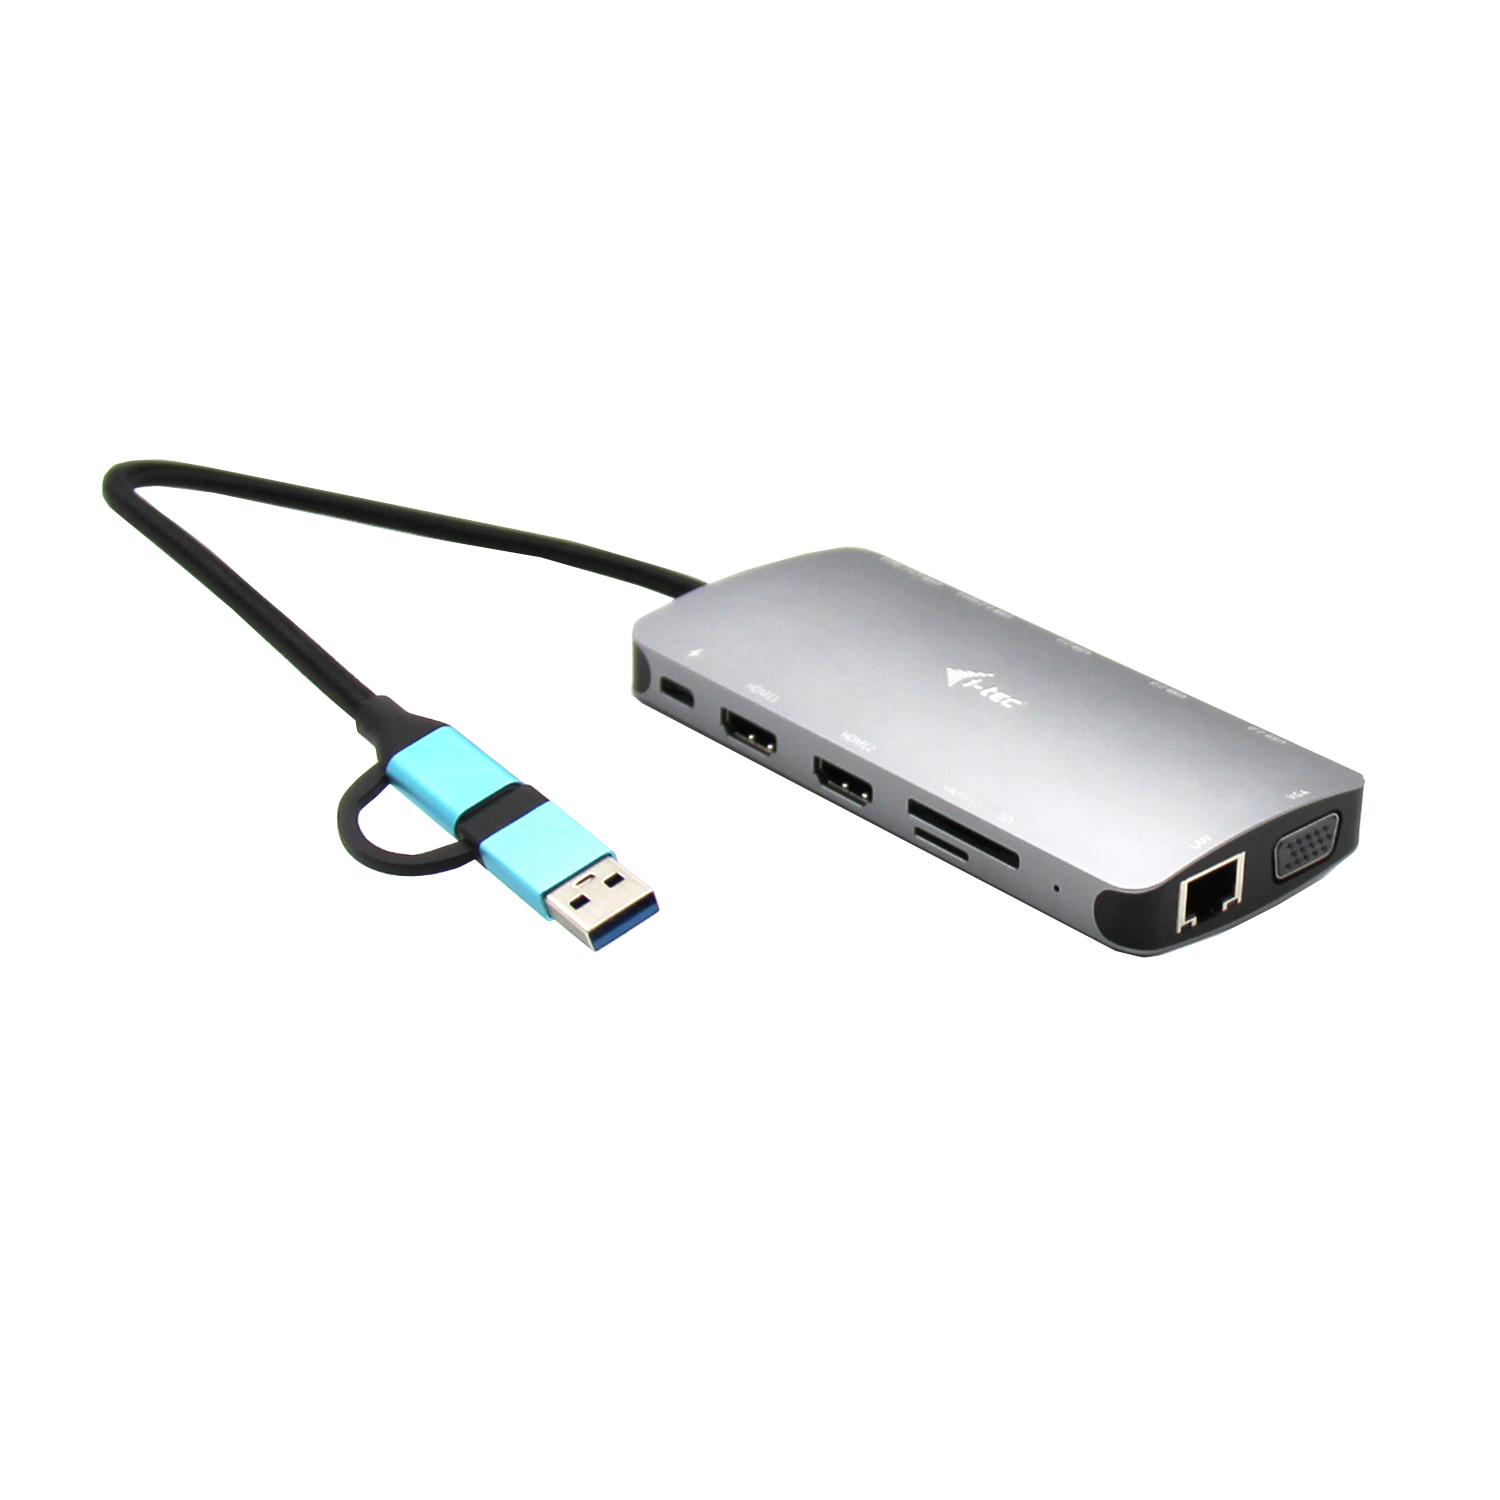 I-TEC DOCKING STATION USB 3.0 USB-C/TB3 3X DISPLAY METAL NANO DOCK WITH LAN, PD 100 W CANANOTDOCKPD